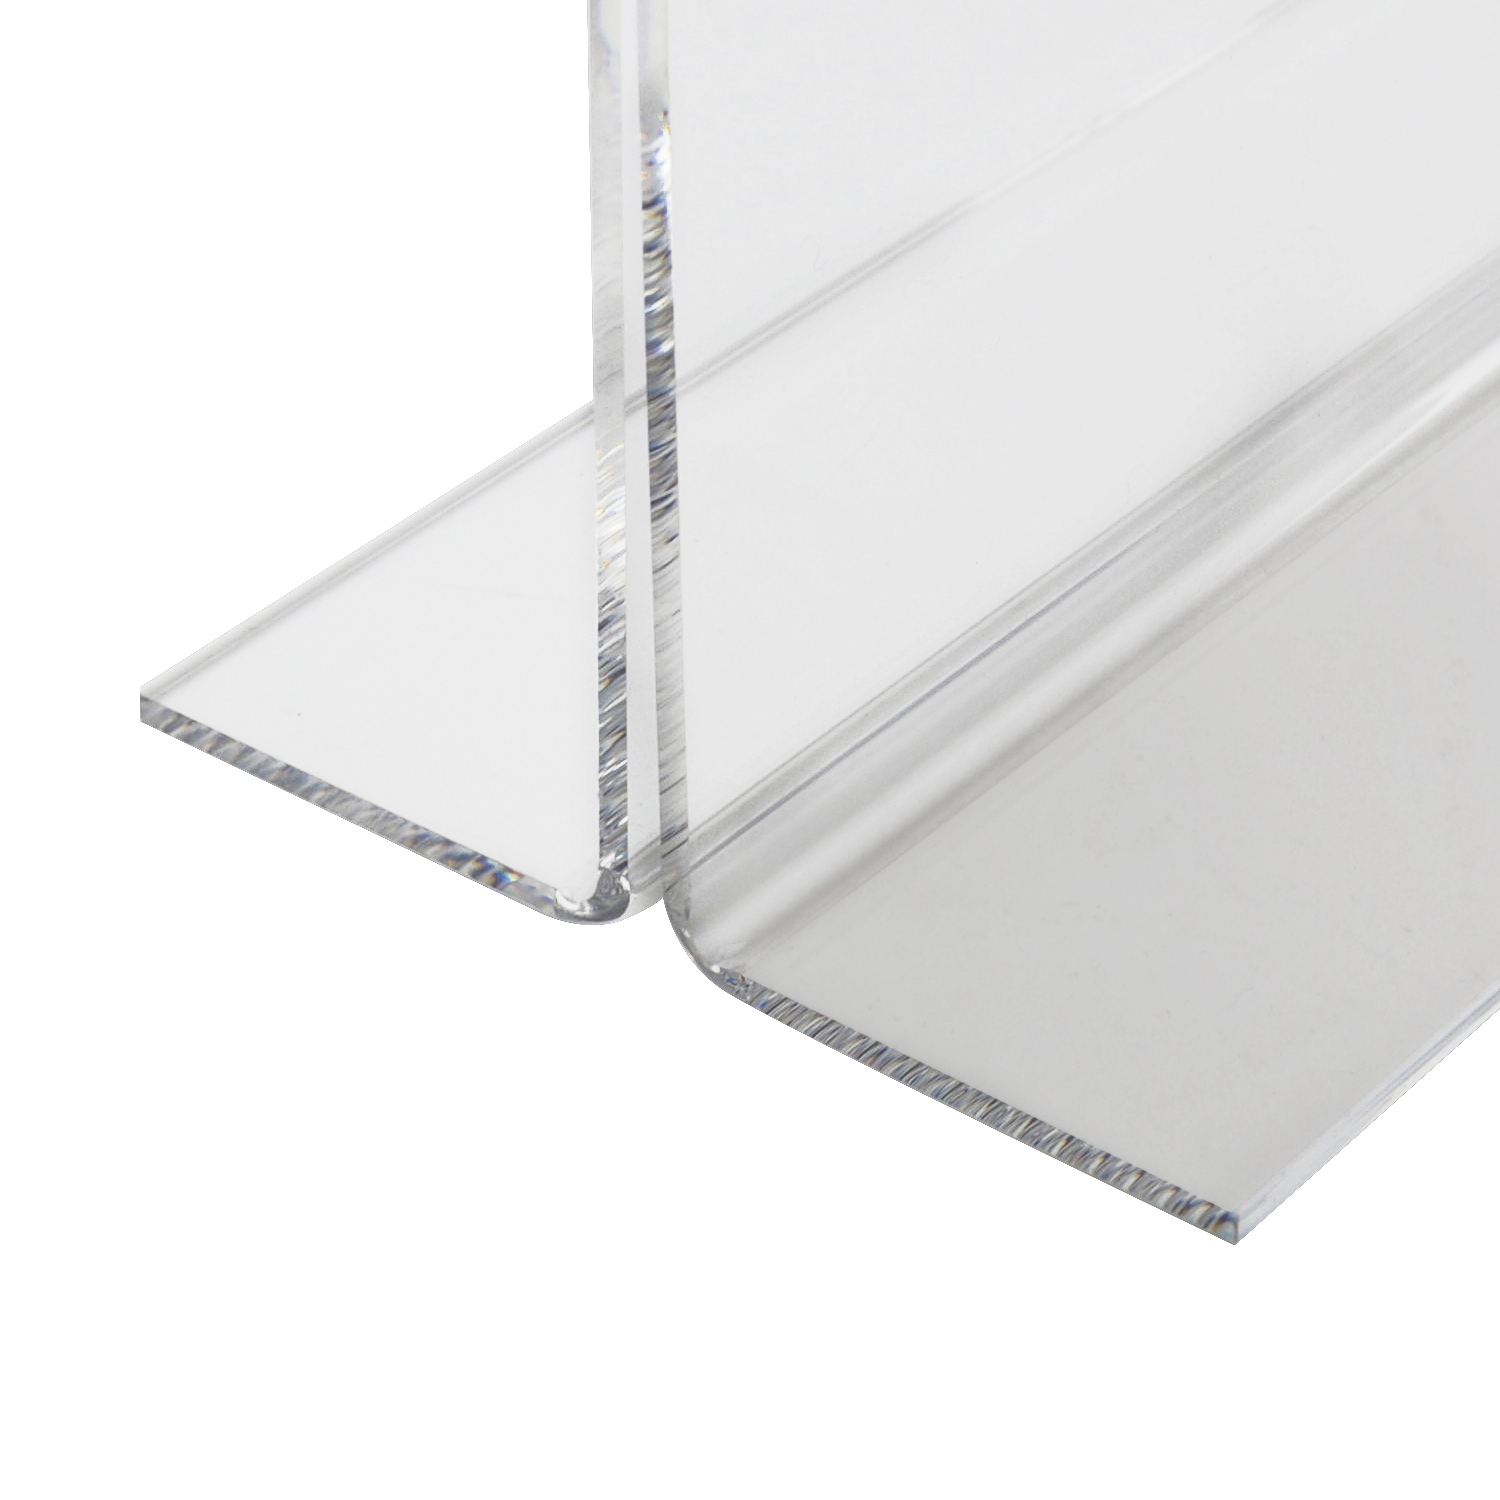 Tischaufsteller oder Menükarte aus Acryl für DIN A6 von HMF mit den Maßen 11.5 x 15.8 x 6.4 cm